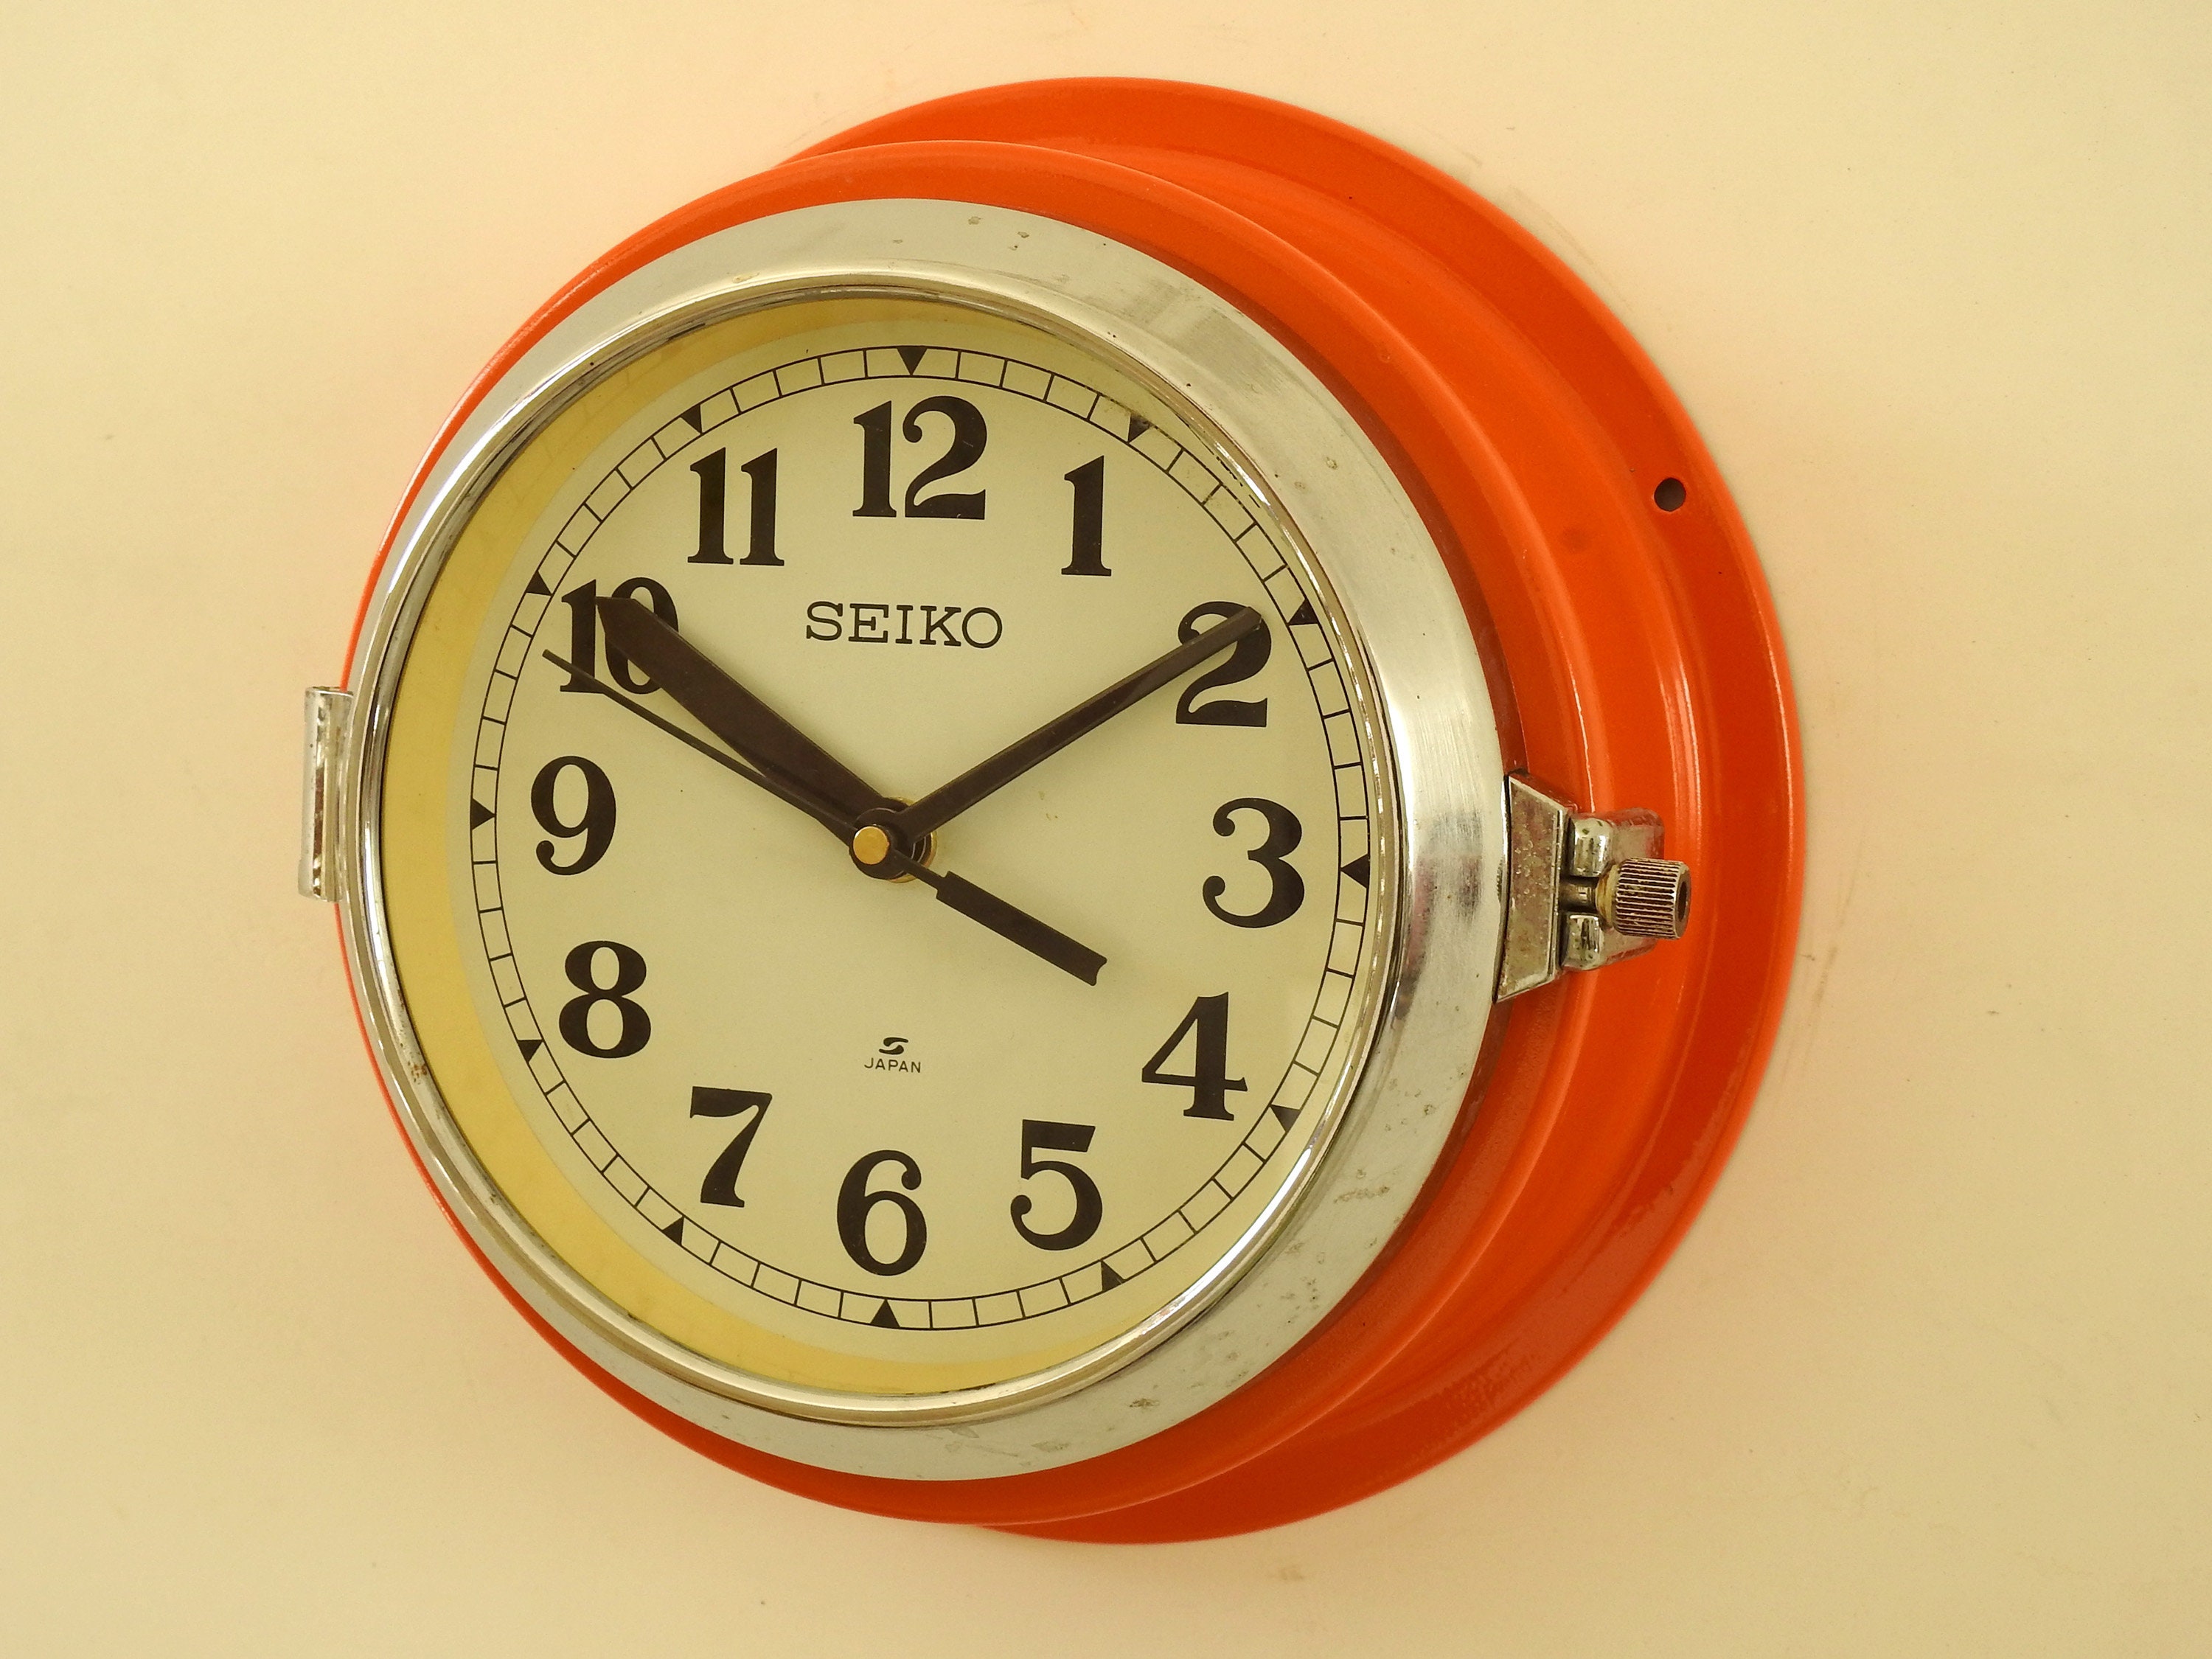 Seiko Vintage Clock - Etsy Canada